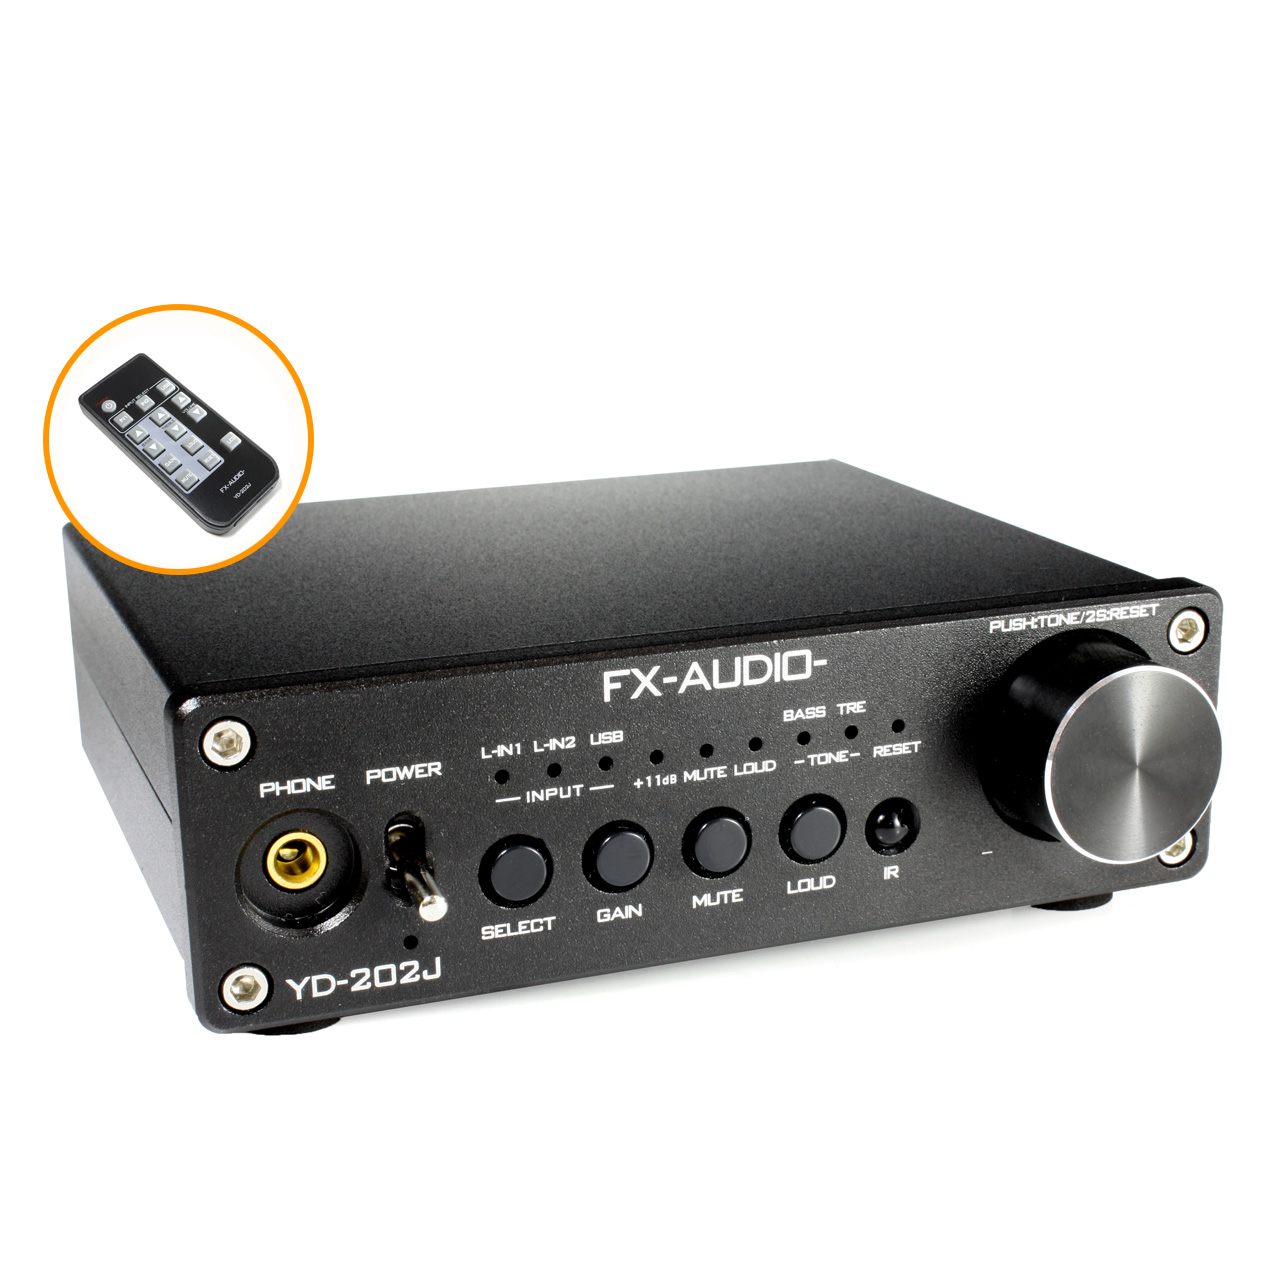 送料無料 FX-AUDIO- YD-202J [ブラック] YDA138デジタルアンプIC搭載デュアルモノラル駆動式デジタルプリメインアンプ USB 入力 DAC 内蔵アンプ